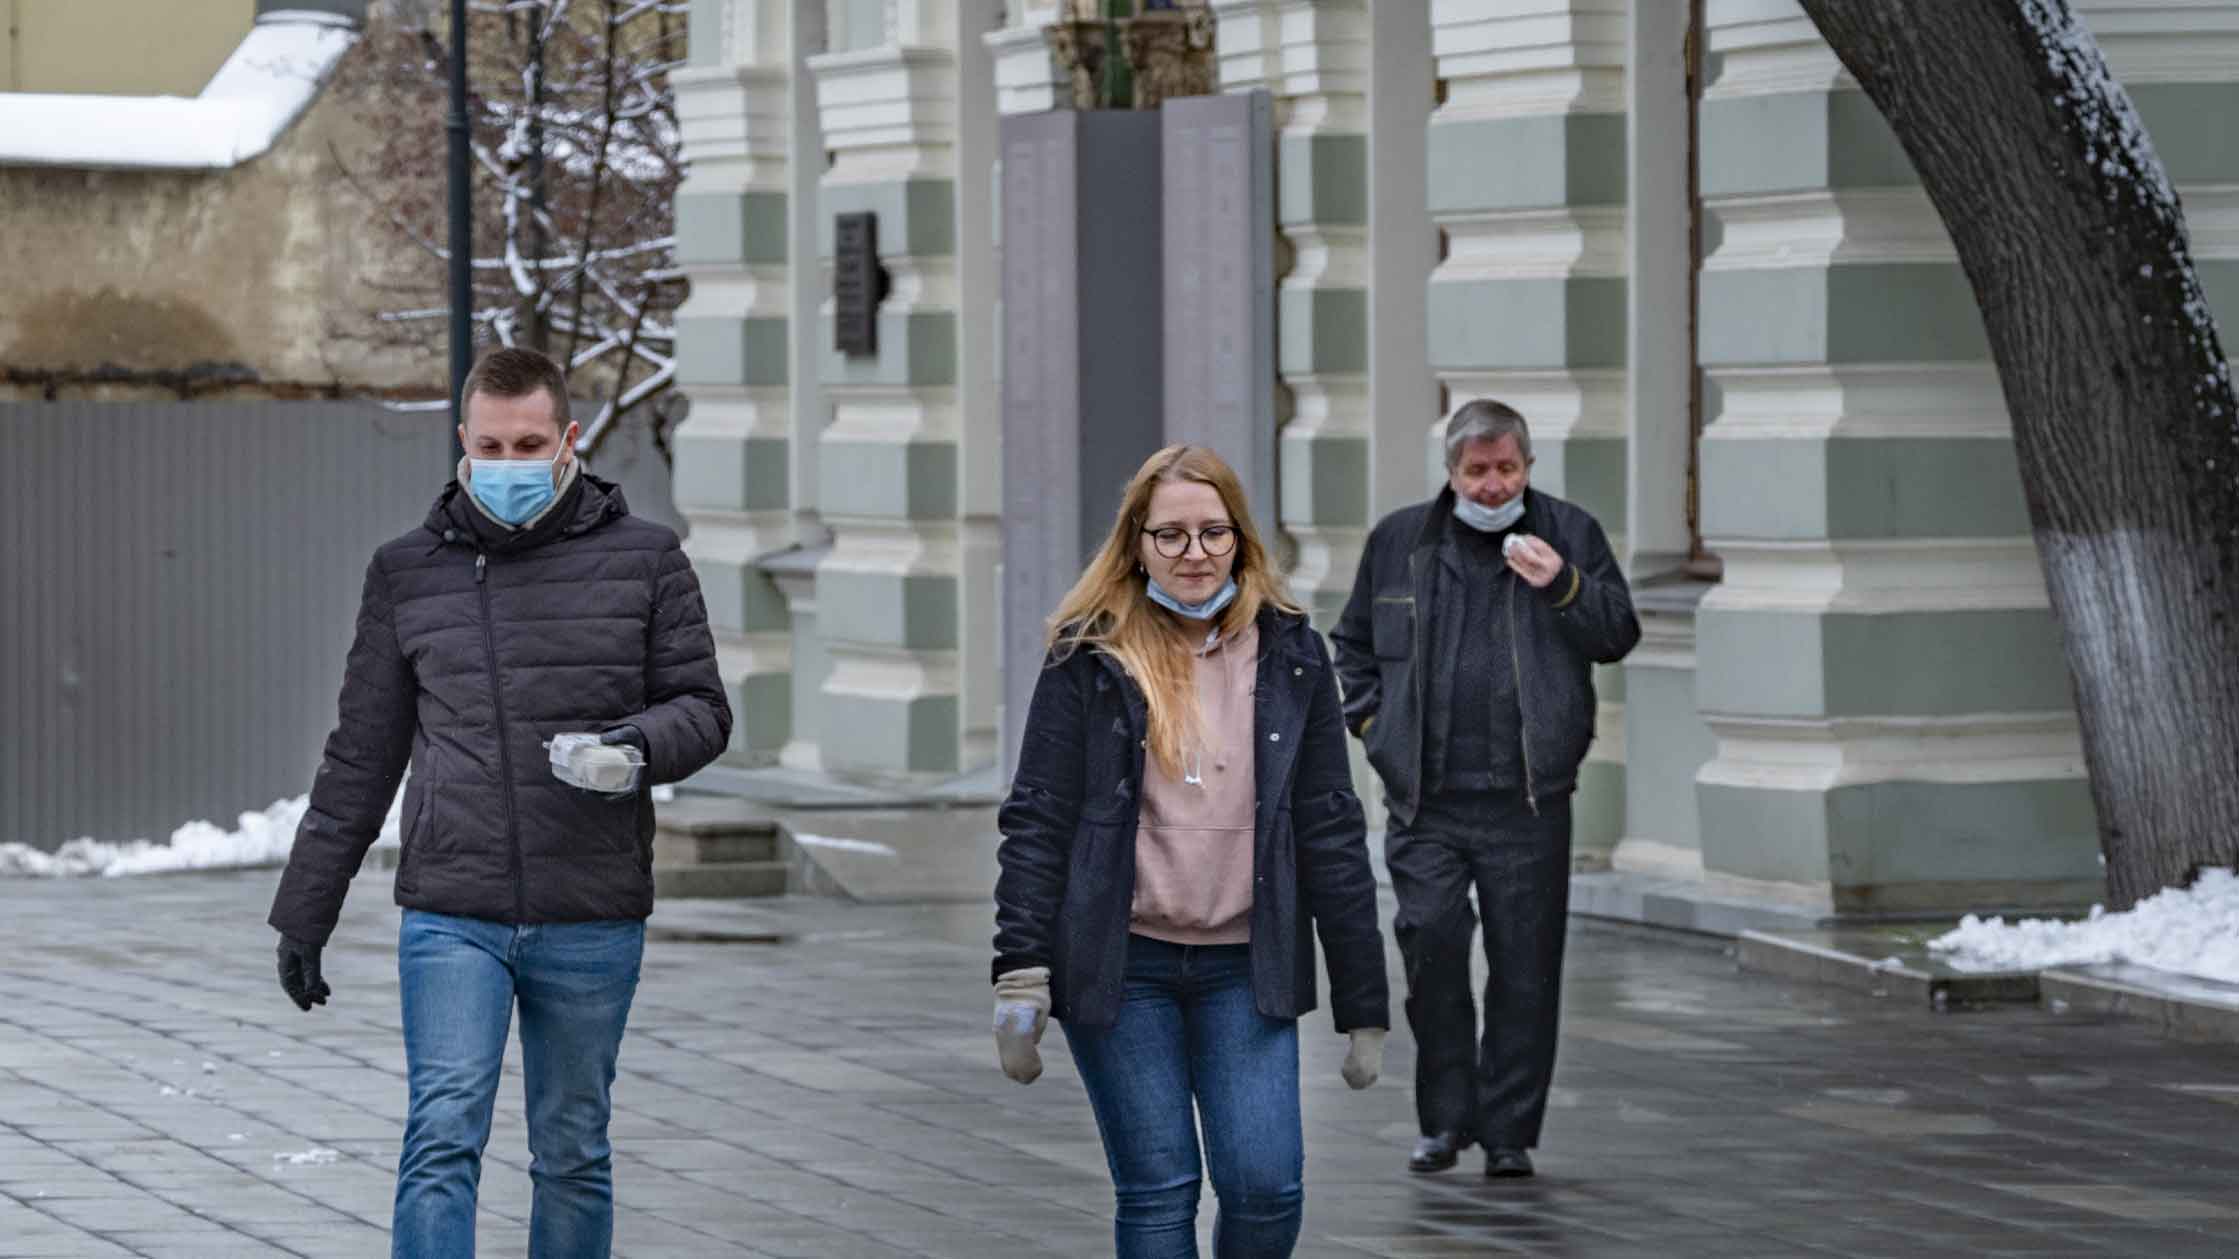 Причина в том, что граждане не соблюдают социальную дистанцию и не надевают маски и перчатки Фото: © GLOBAL LOOK press / Konstantin Kokoshkin